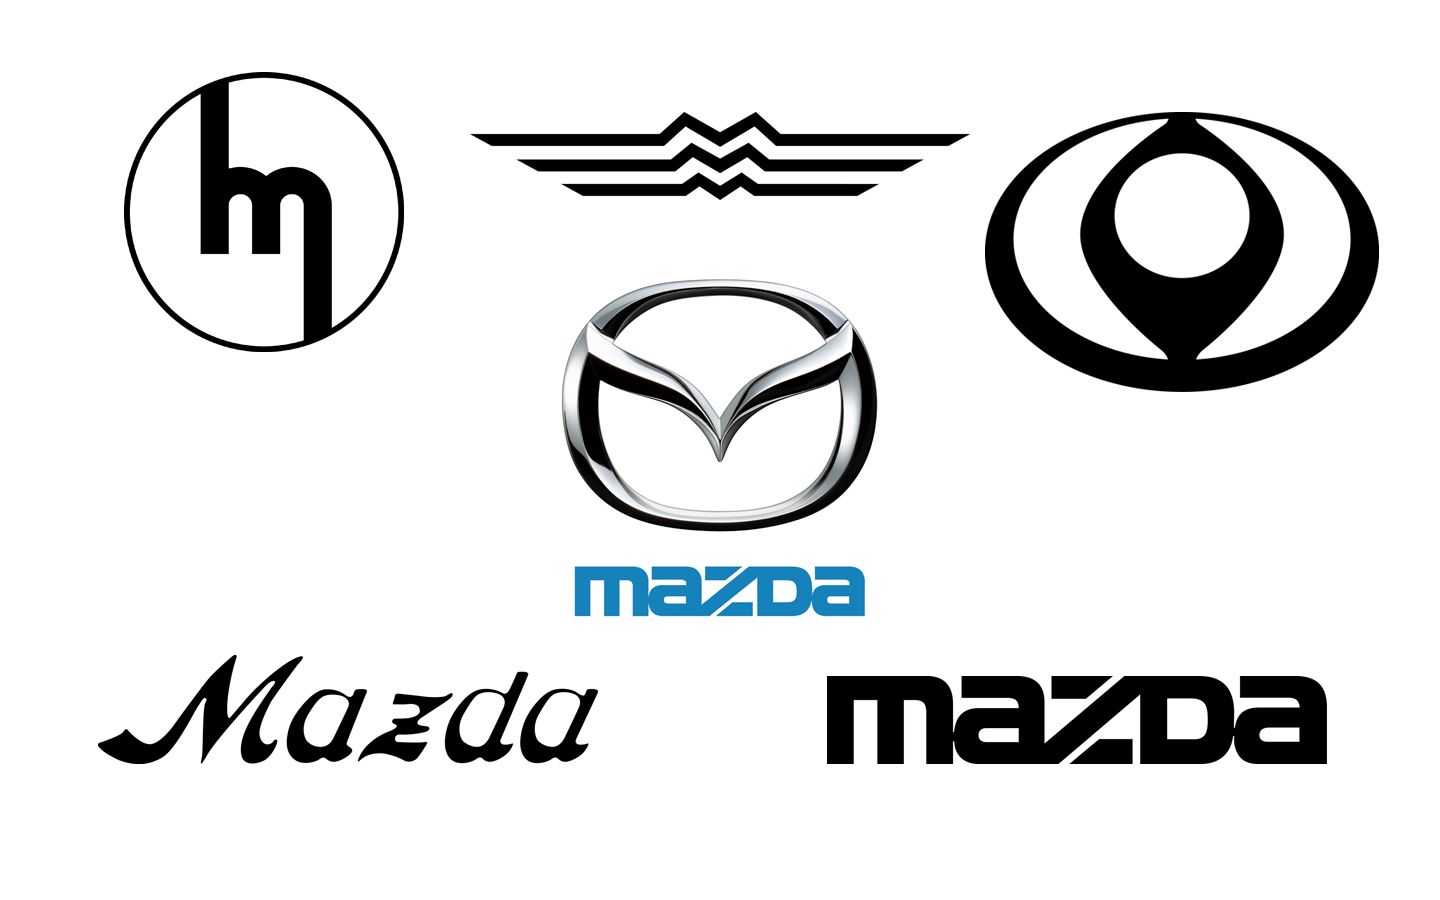 Логотип мазда - что означает, расшифровка знака, вся история mazda